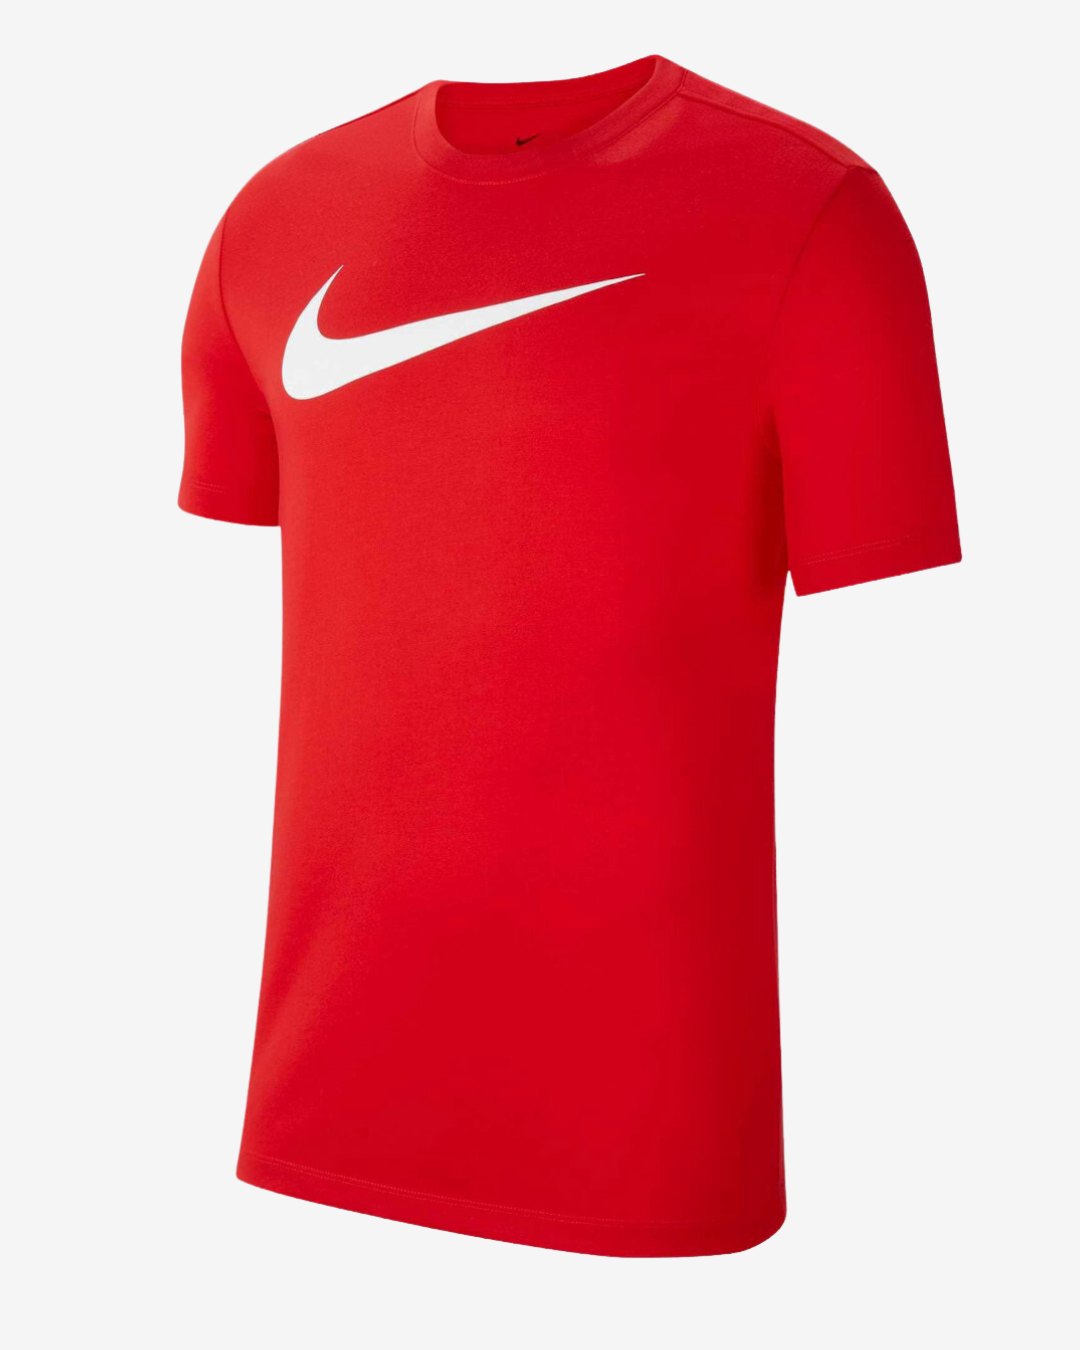 Billede af Nike Dri-fit park 20 t-shirt - Rød - Str. S - Modish.dk